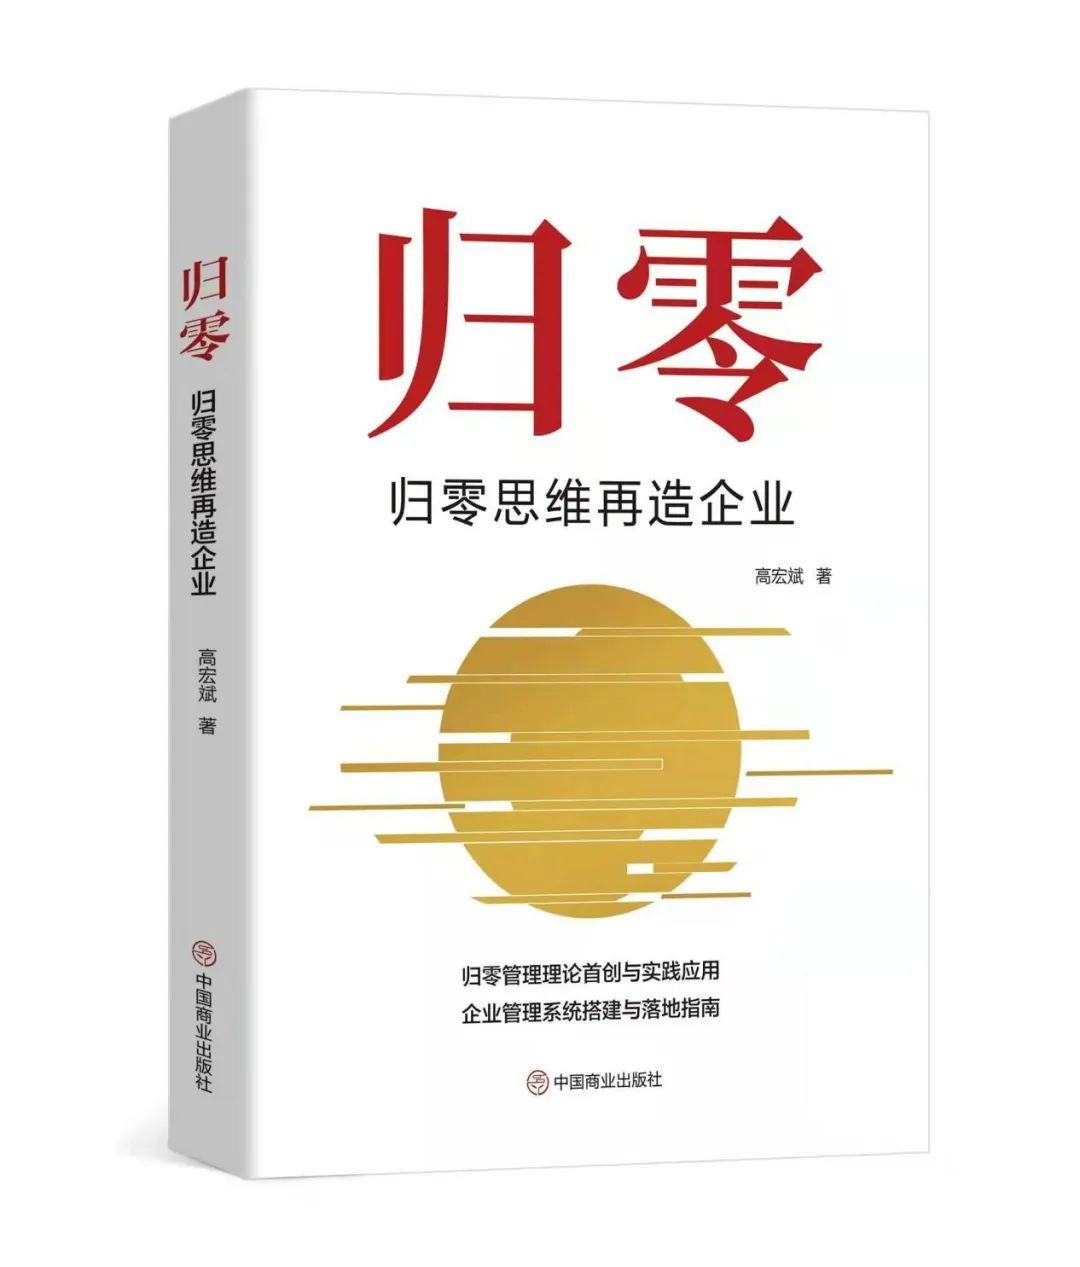 高宏斌老師管理學著作《歸零》出版發行。